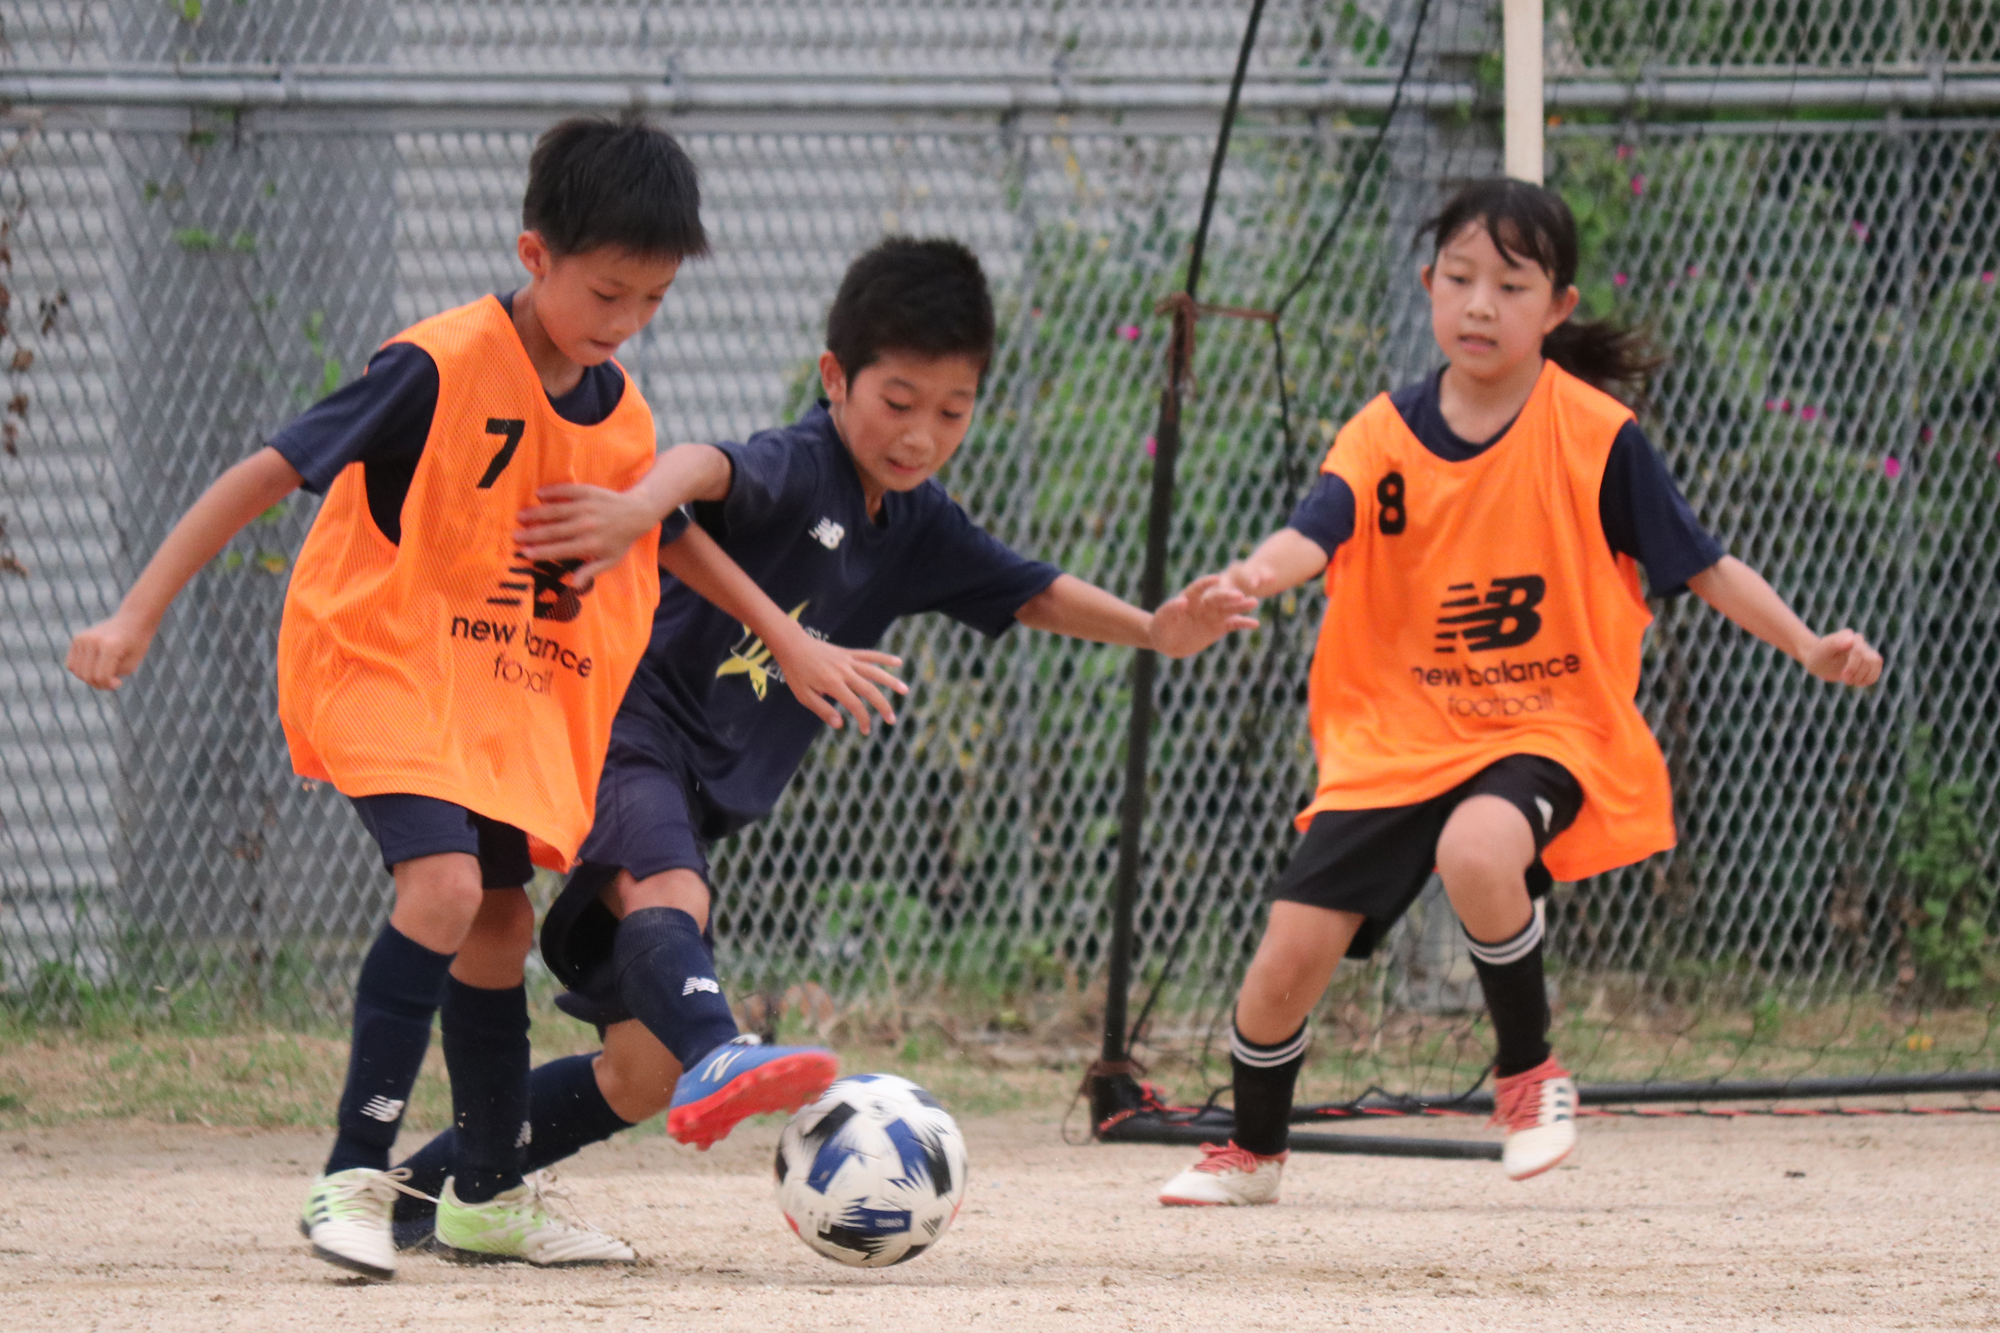 Deseoサッカースクール年9月について 大阪中央区で活動するサッカースクール